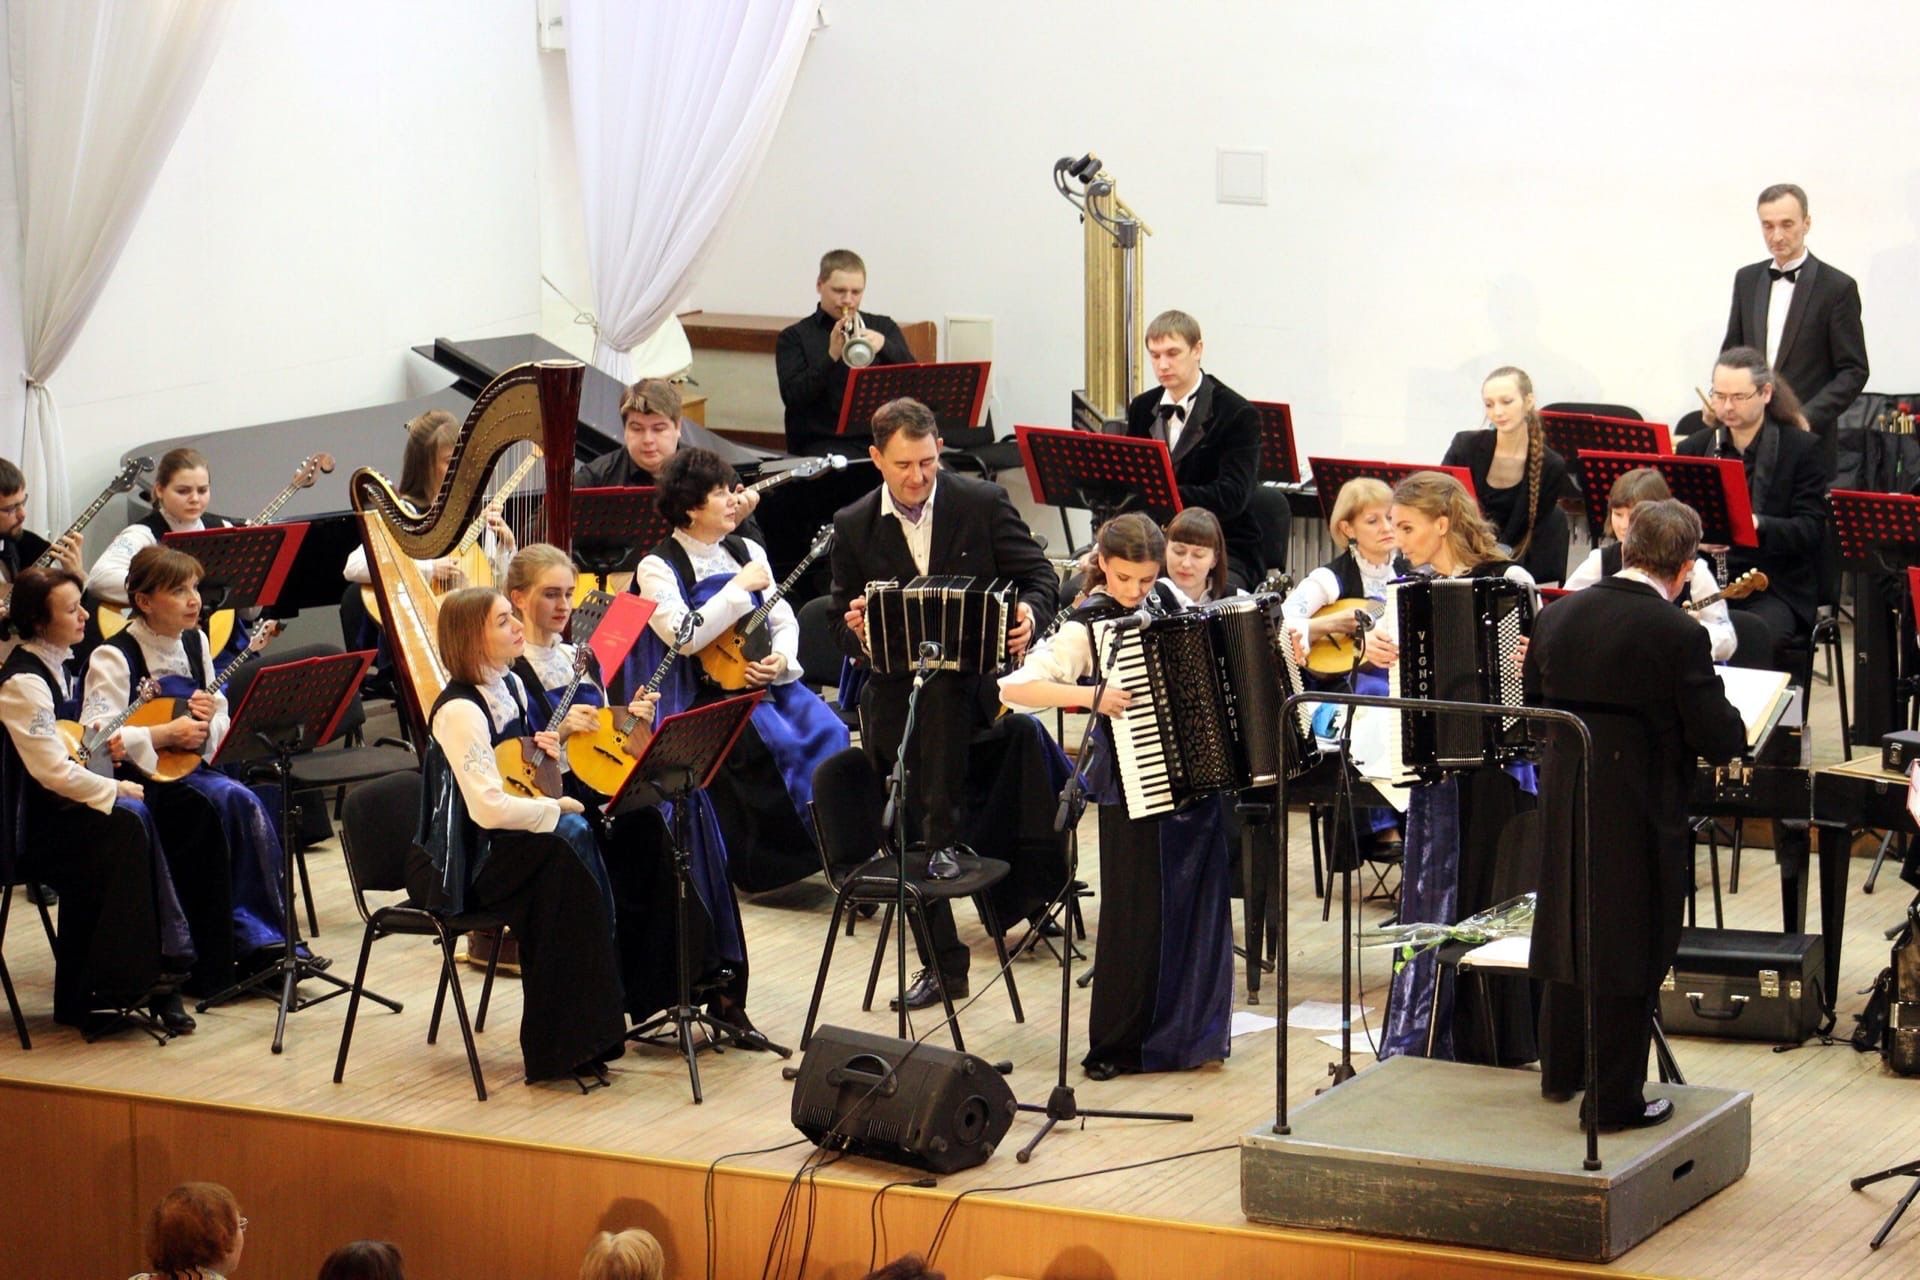 Karjalan venäläisten kansansoitinten orkesteri Onego on kasvanut amatööriryhmästä ammattiorkesteriksi, joka tunnetaan hyvin sekä maassamme että sen ulkopuolella. Kuva: Onegon Vkontakte-tili